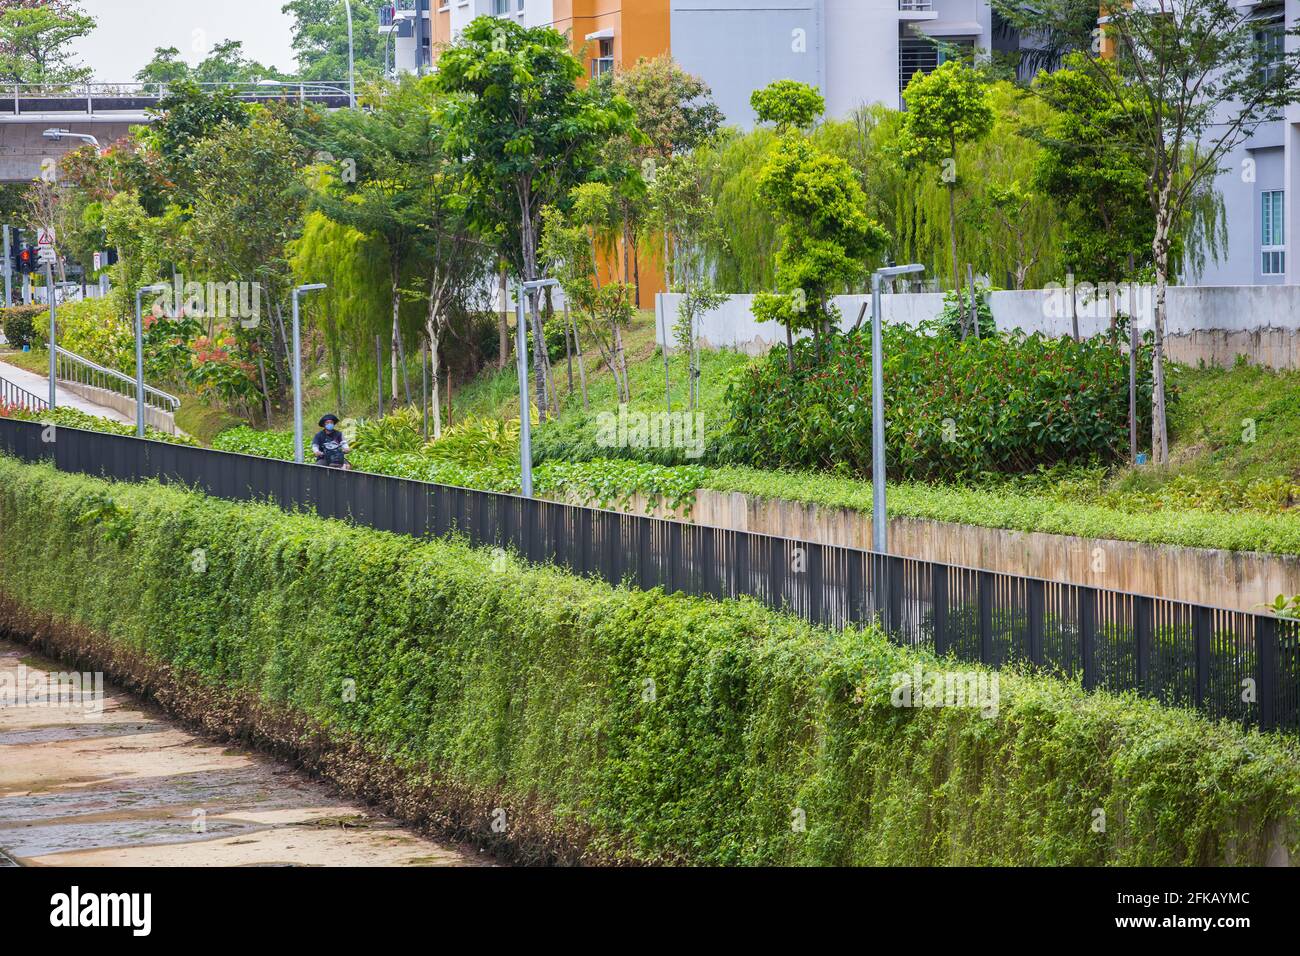 Parco di quartiere con incantevole vegetazione lussureggiante. Singapore. Foto Stock